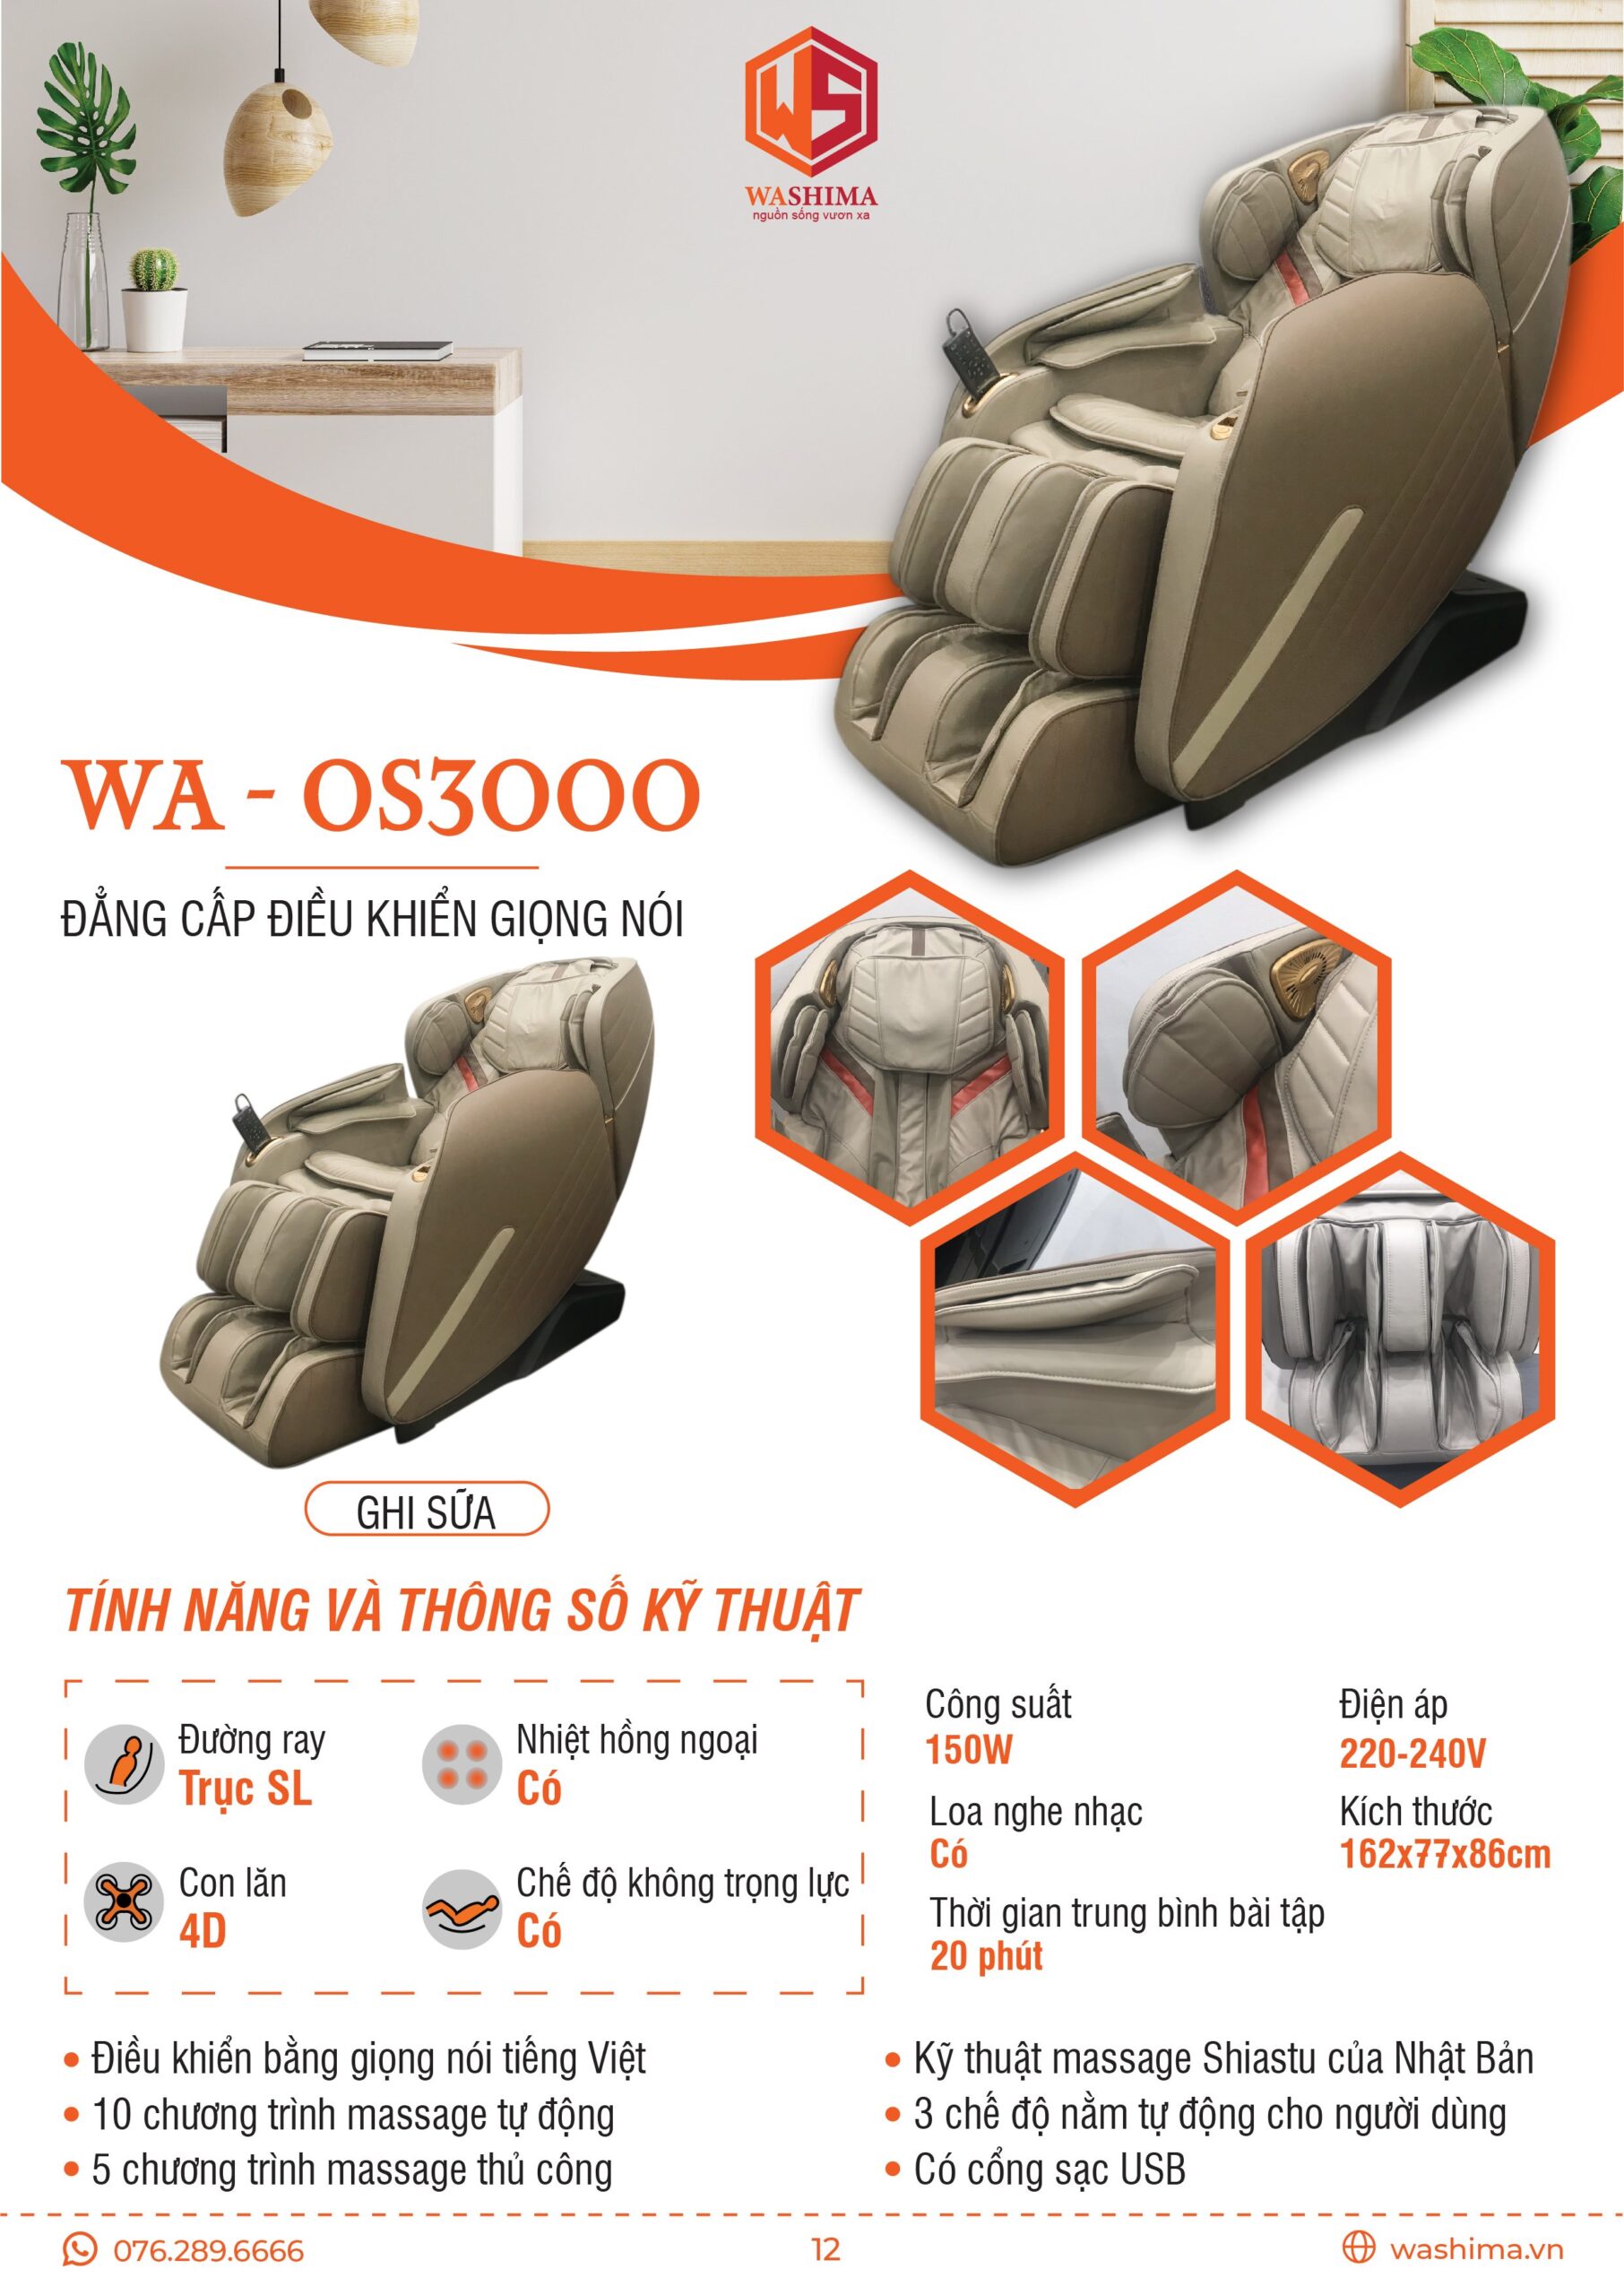 Thông số kỹ thuật của chiếc ghế massage đẳng cấp điều khiển giọng nói WA-OS3000